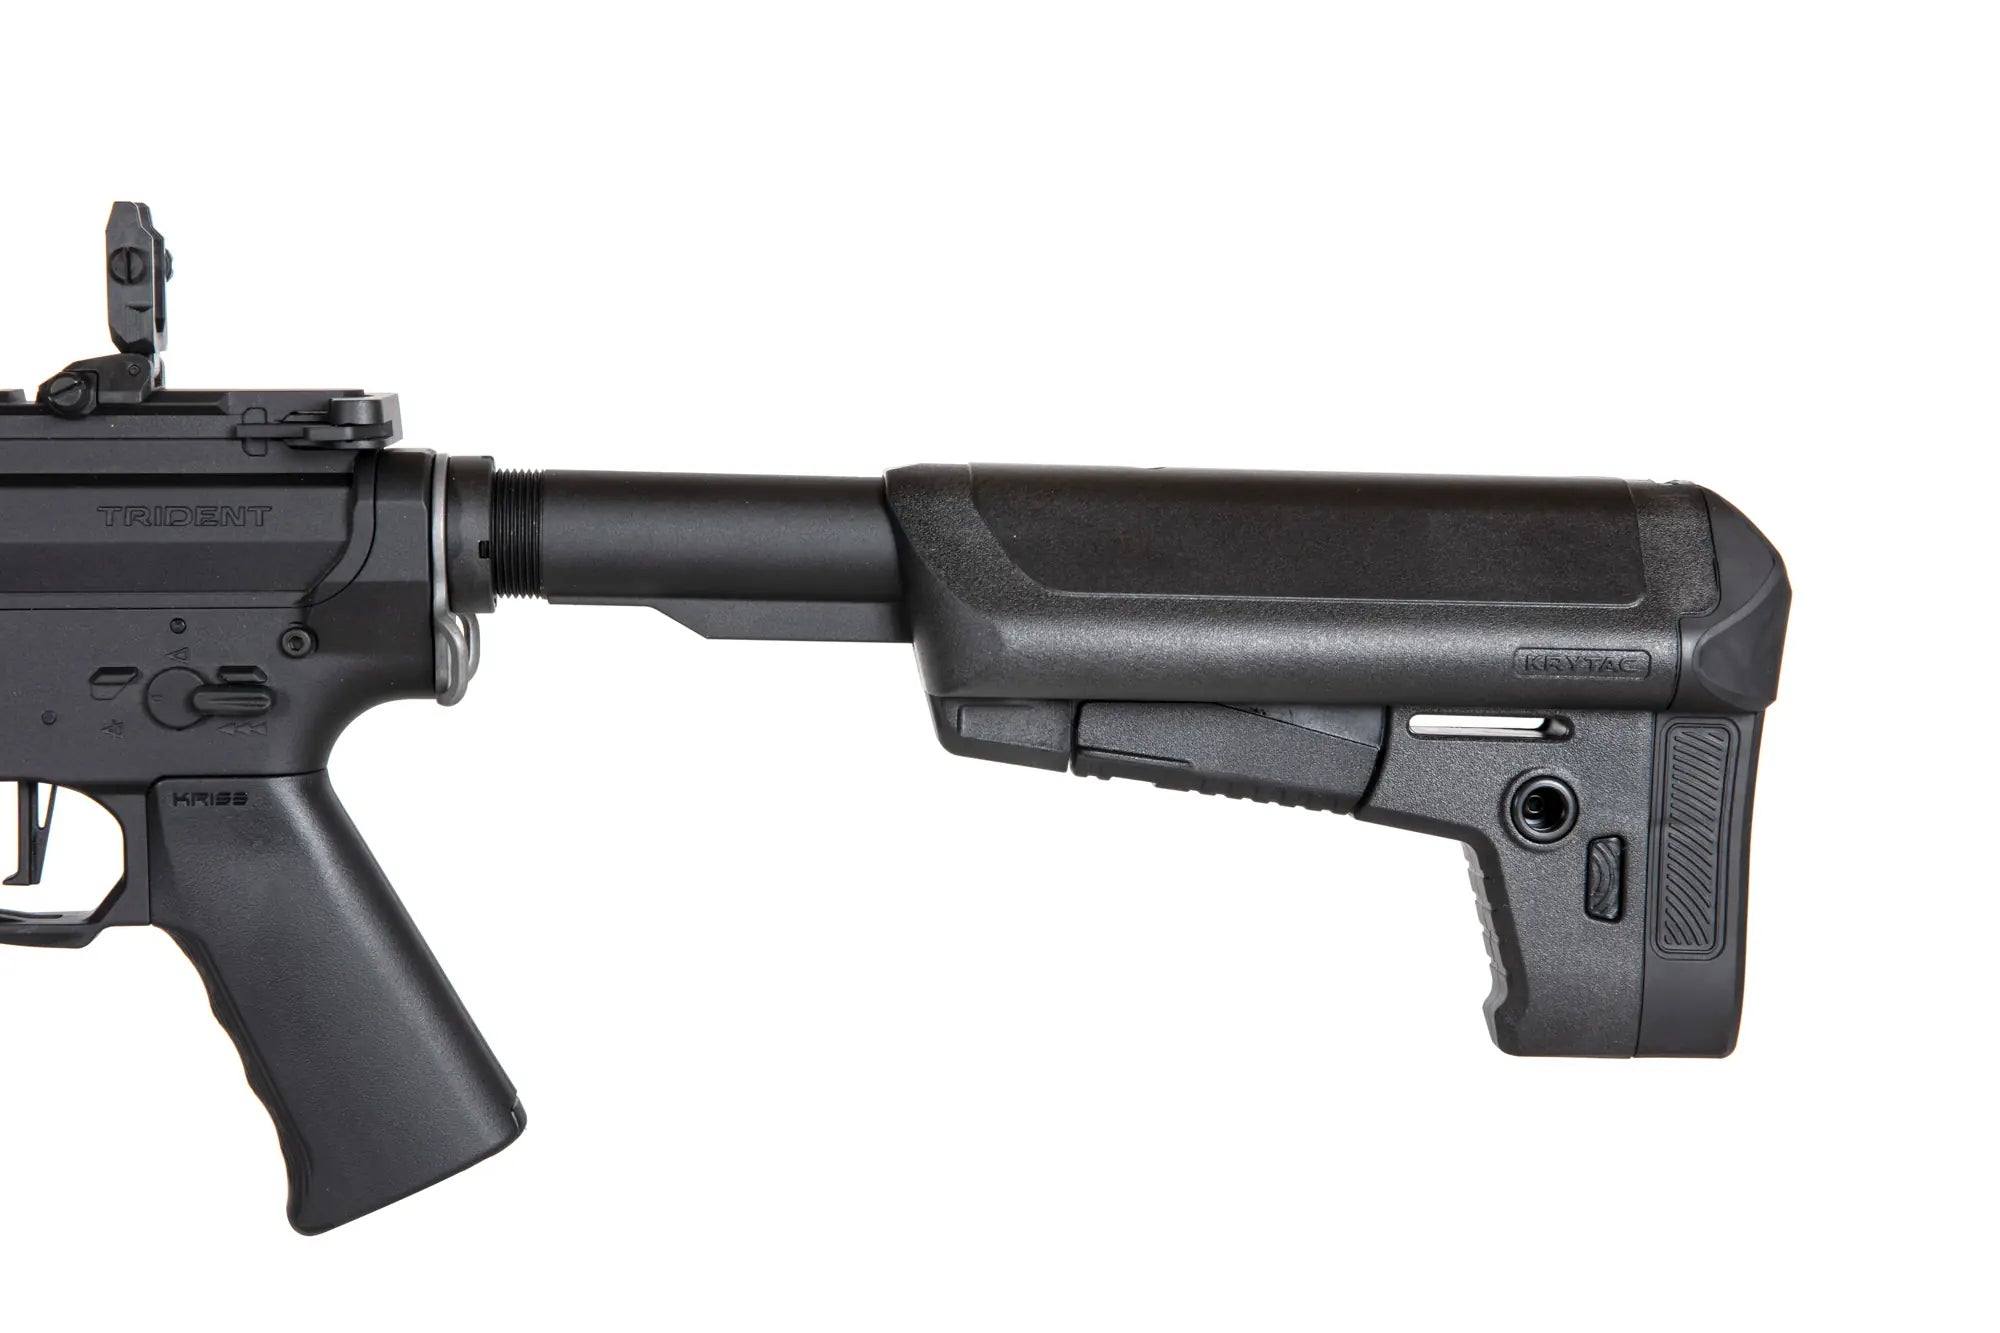 TRIDENT MK-II M SPR Airsoft DMR-Gewehr